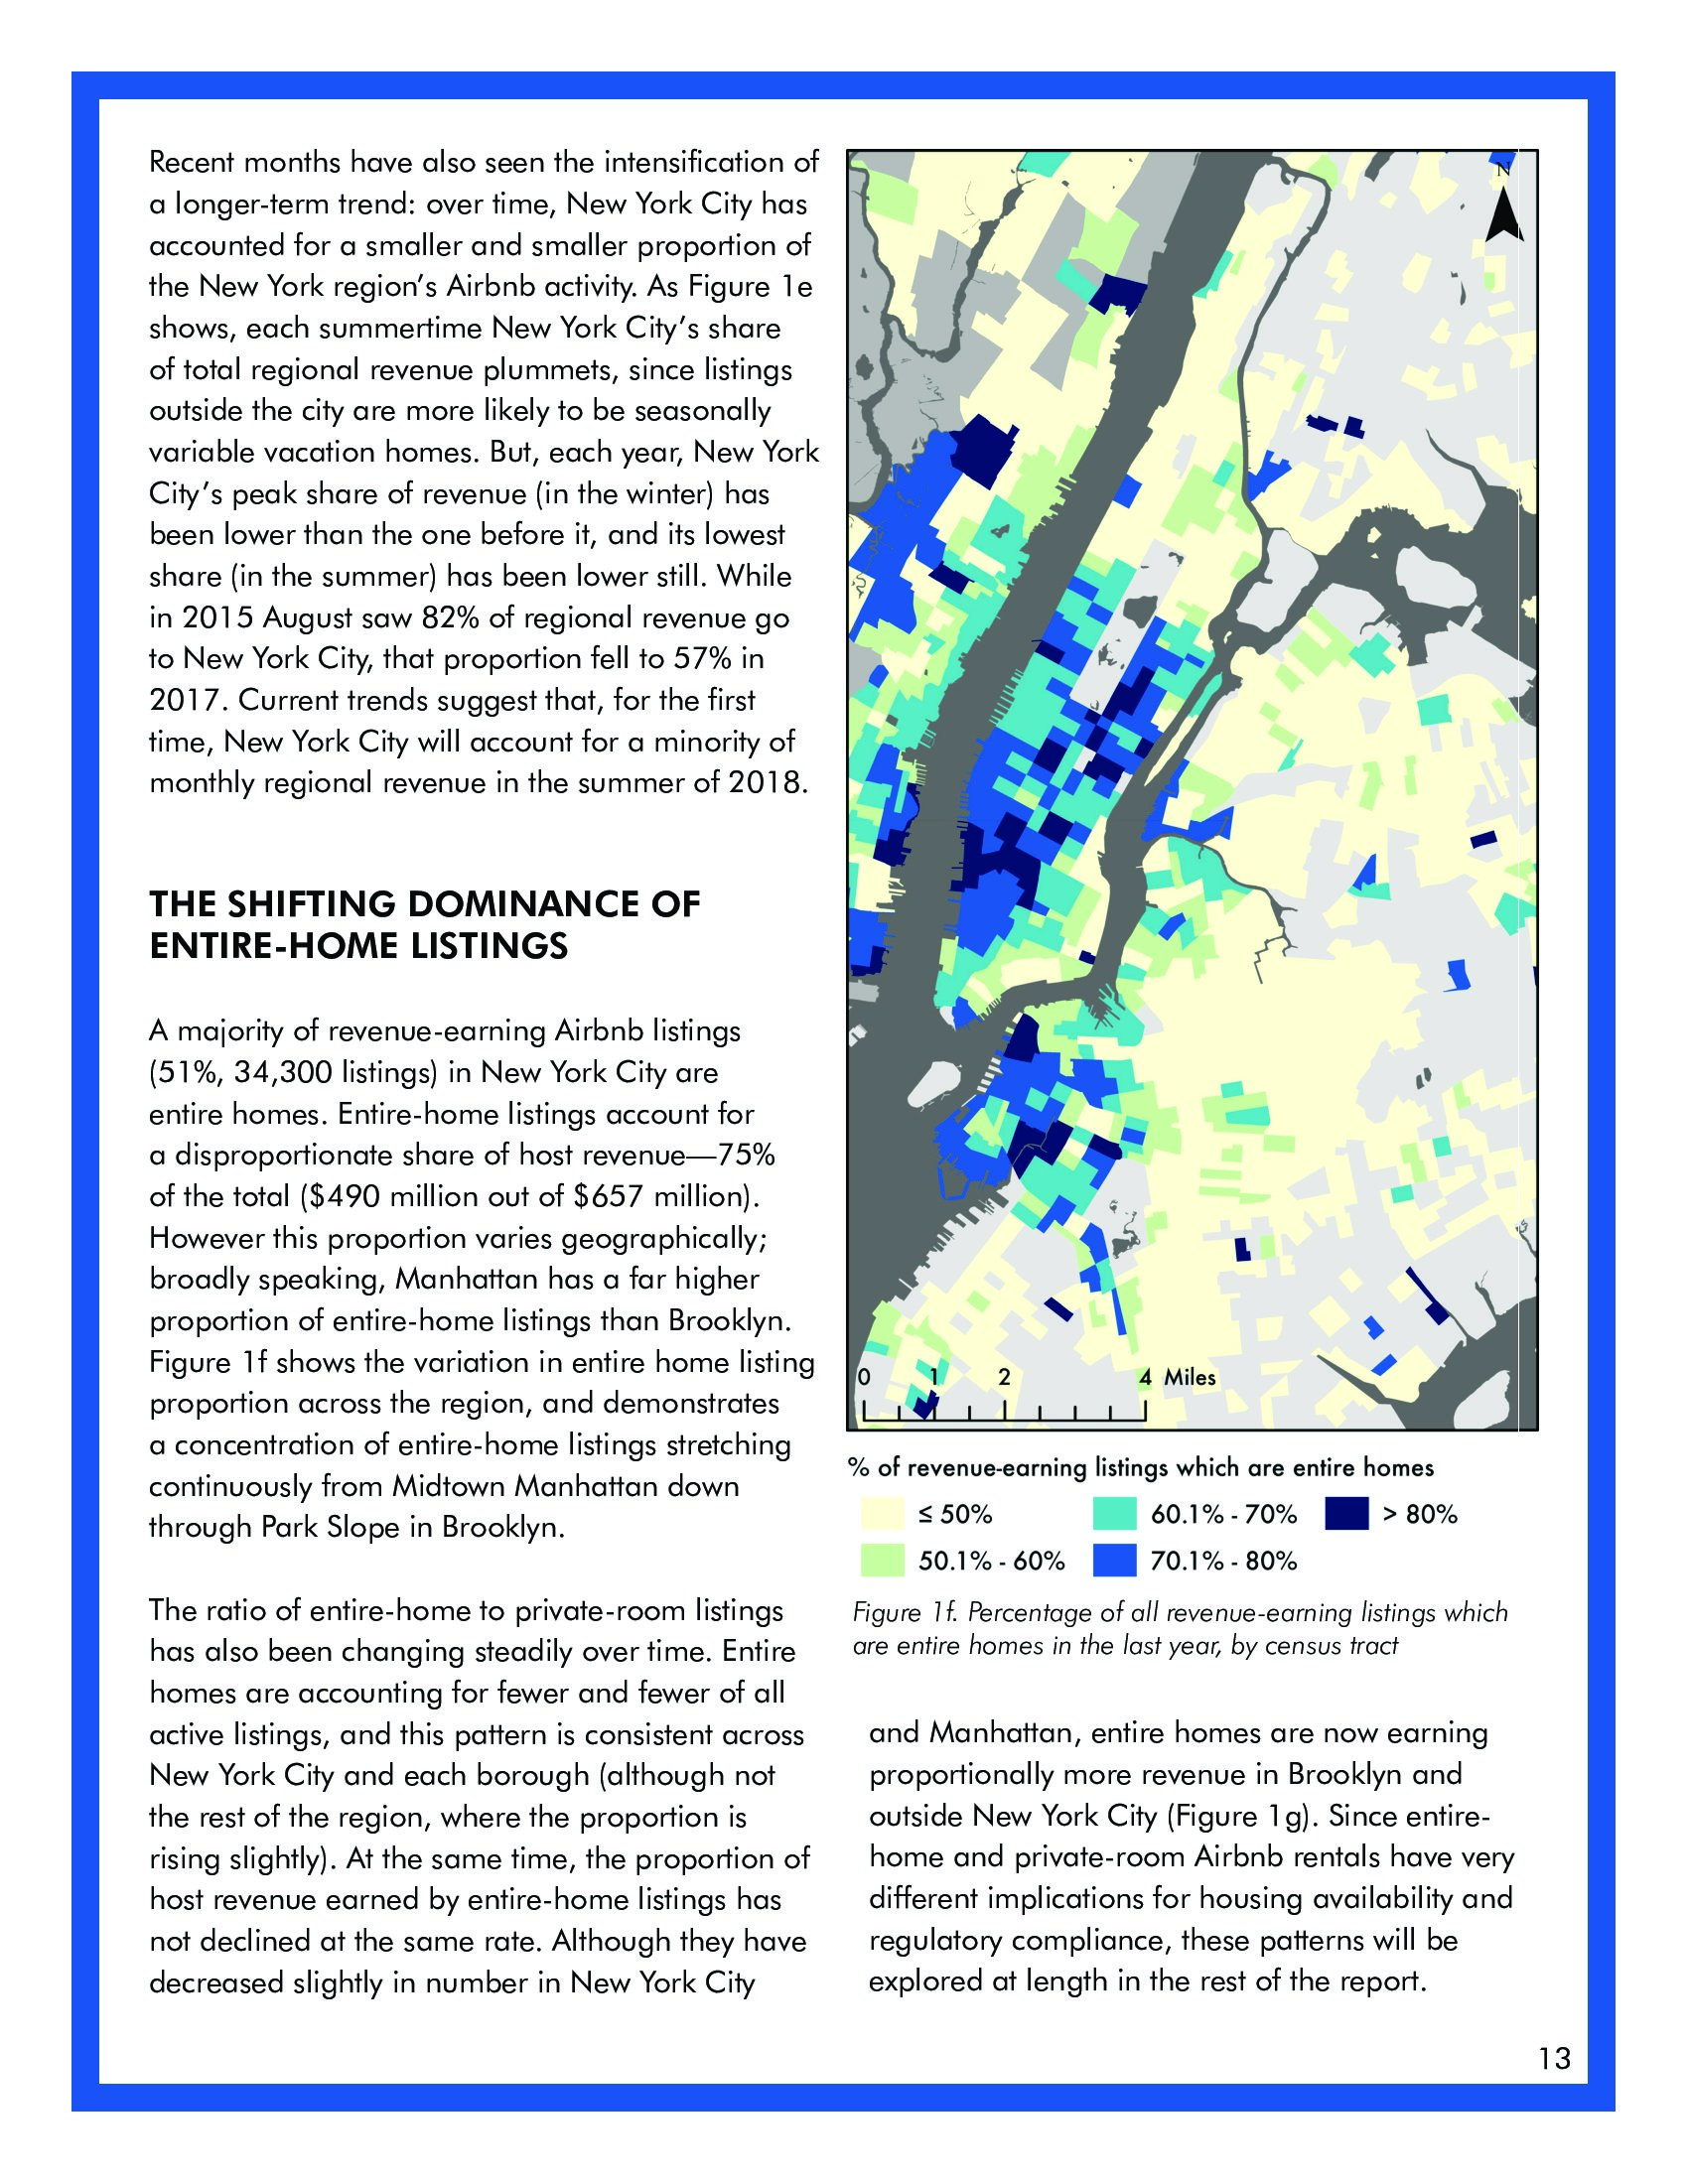 麦吉尔大学：关于纽约市短租的高成本报告(图13)